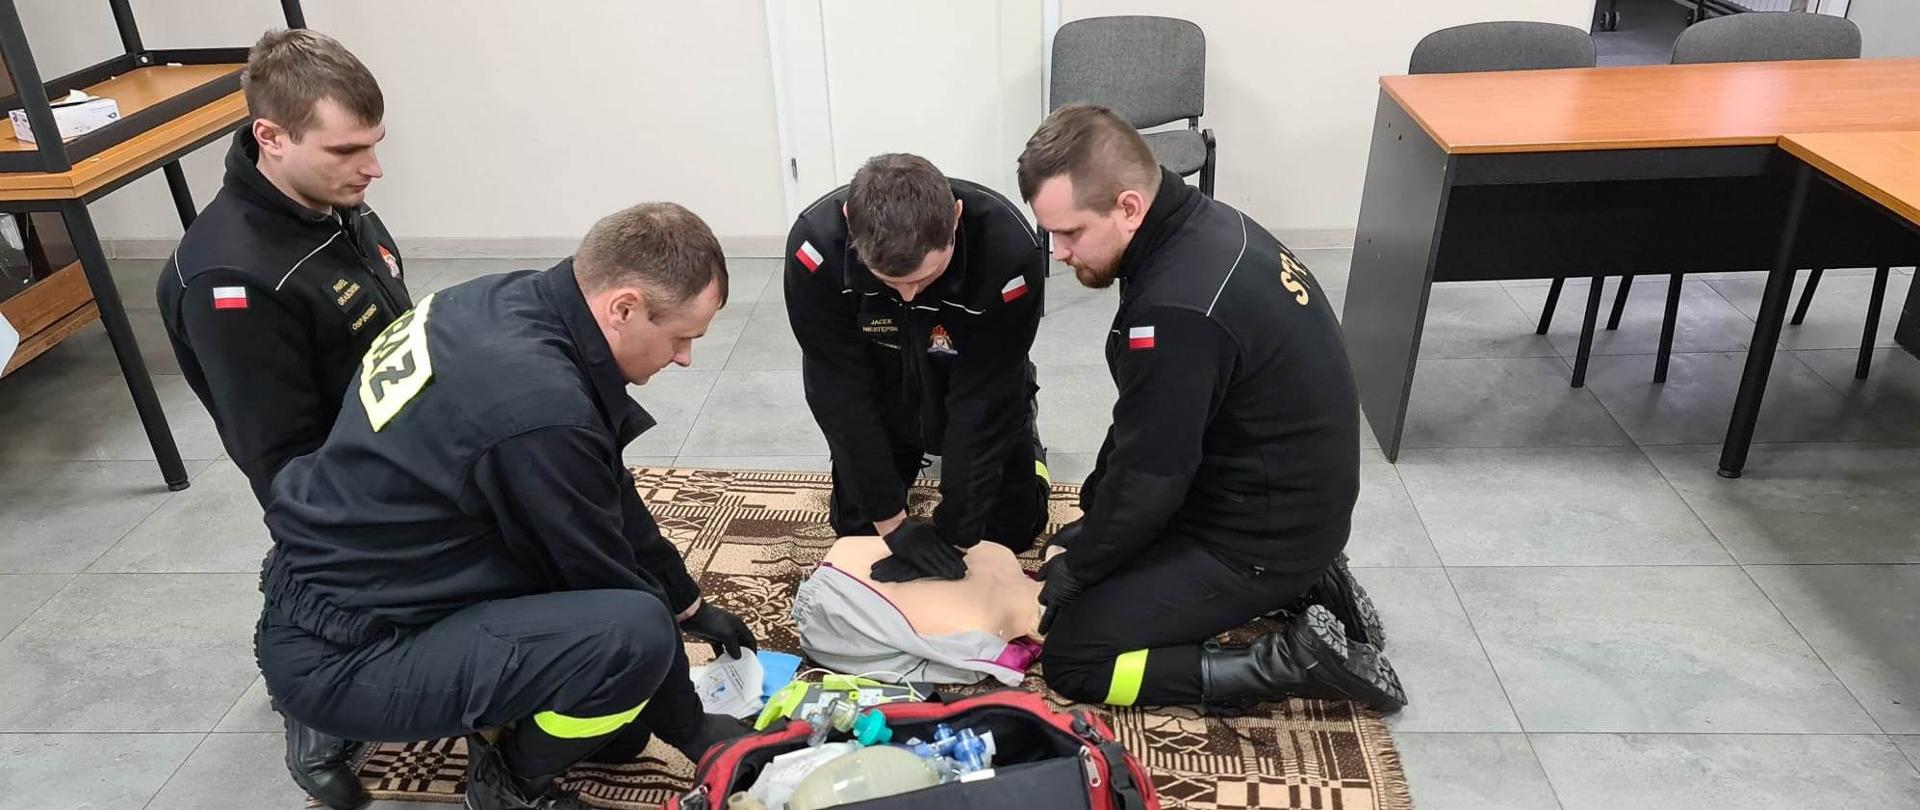 Czterech strażaków wykonuje zadanie egzaminacyjne z zakresu Kwalifikowanej Pierwszej pomocy. Pierwszy wykonuje uciski klatki piersiowej na manekinie, drugi stabilizuje głowę, trzeci i czwarty kompletują sprzęt z torby medycznej. 